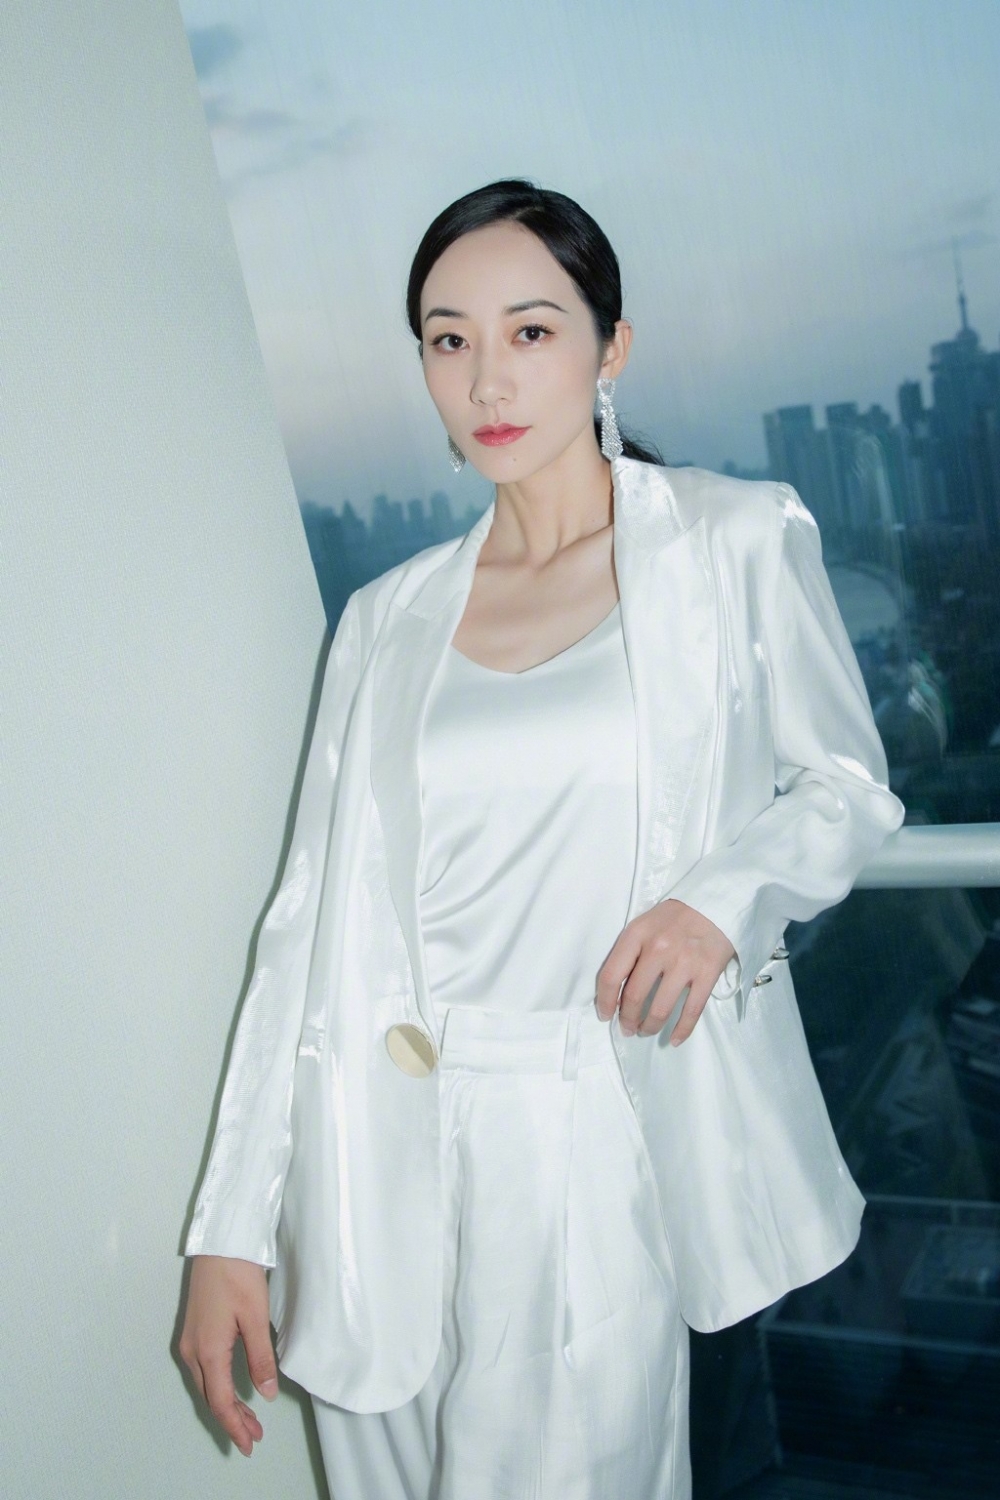 韩雪白色西装套装率性干练女神范十足高清写真图片第3张